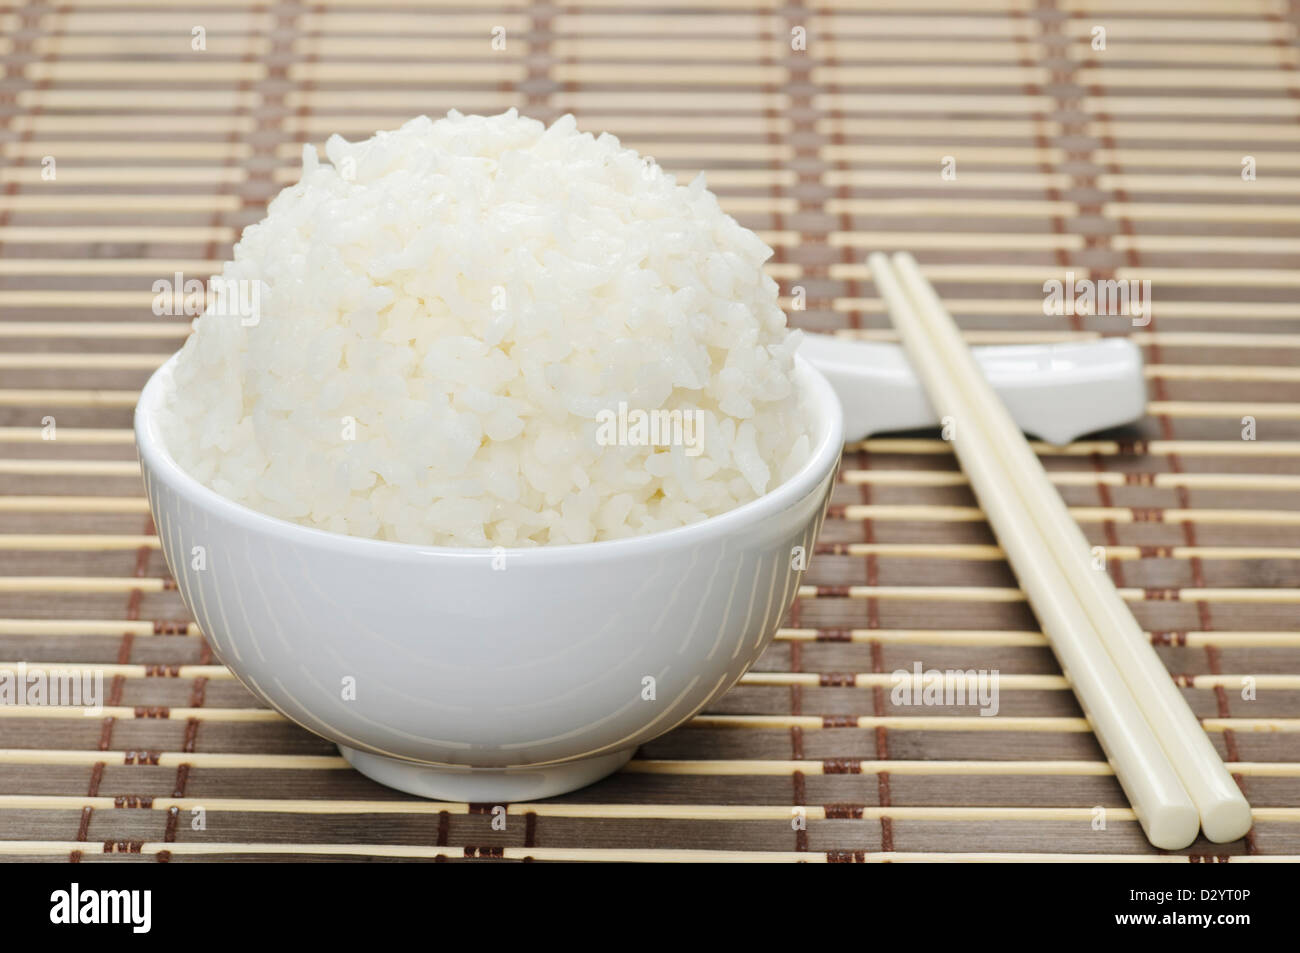 White steamed rice in ceramic bowl Stock Photo